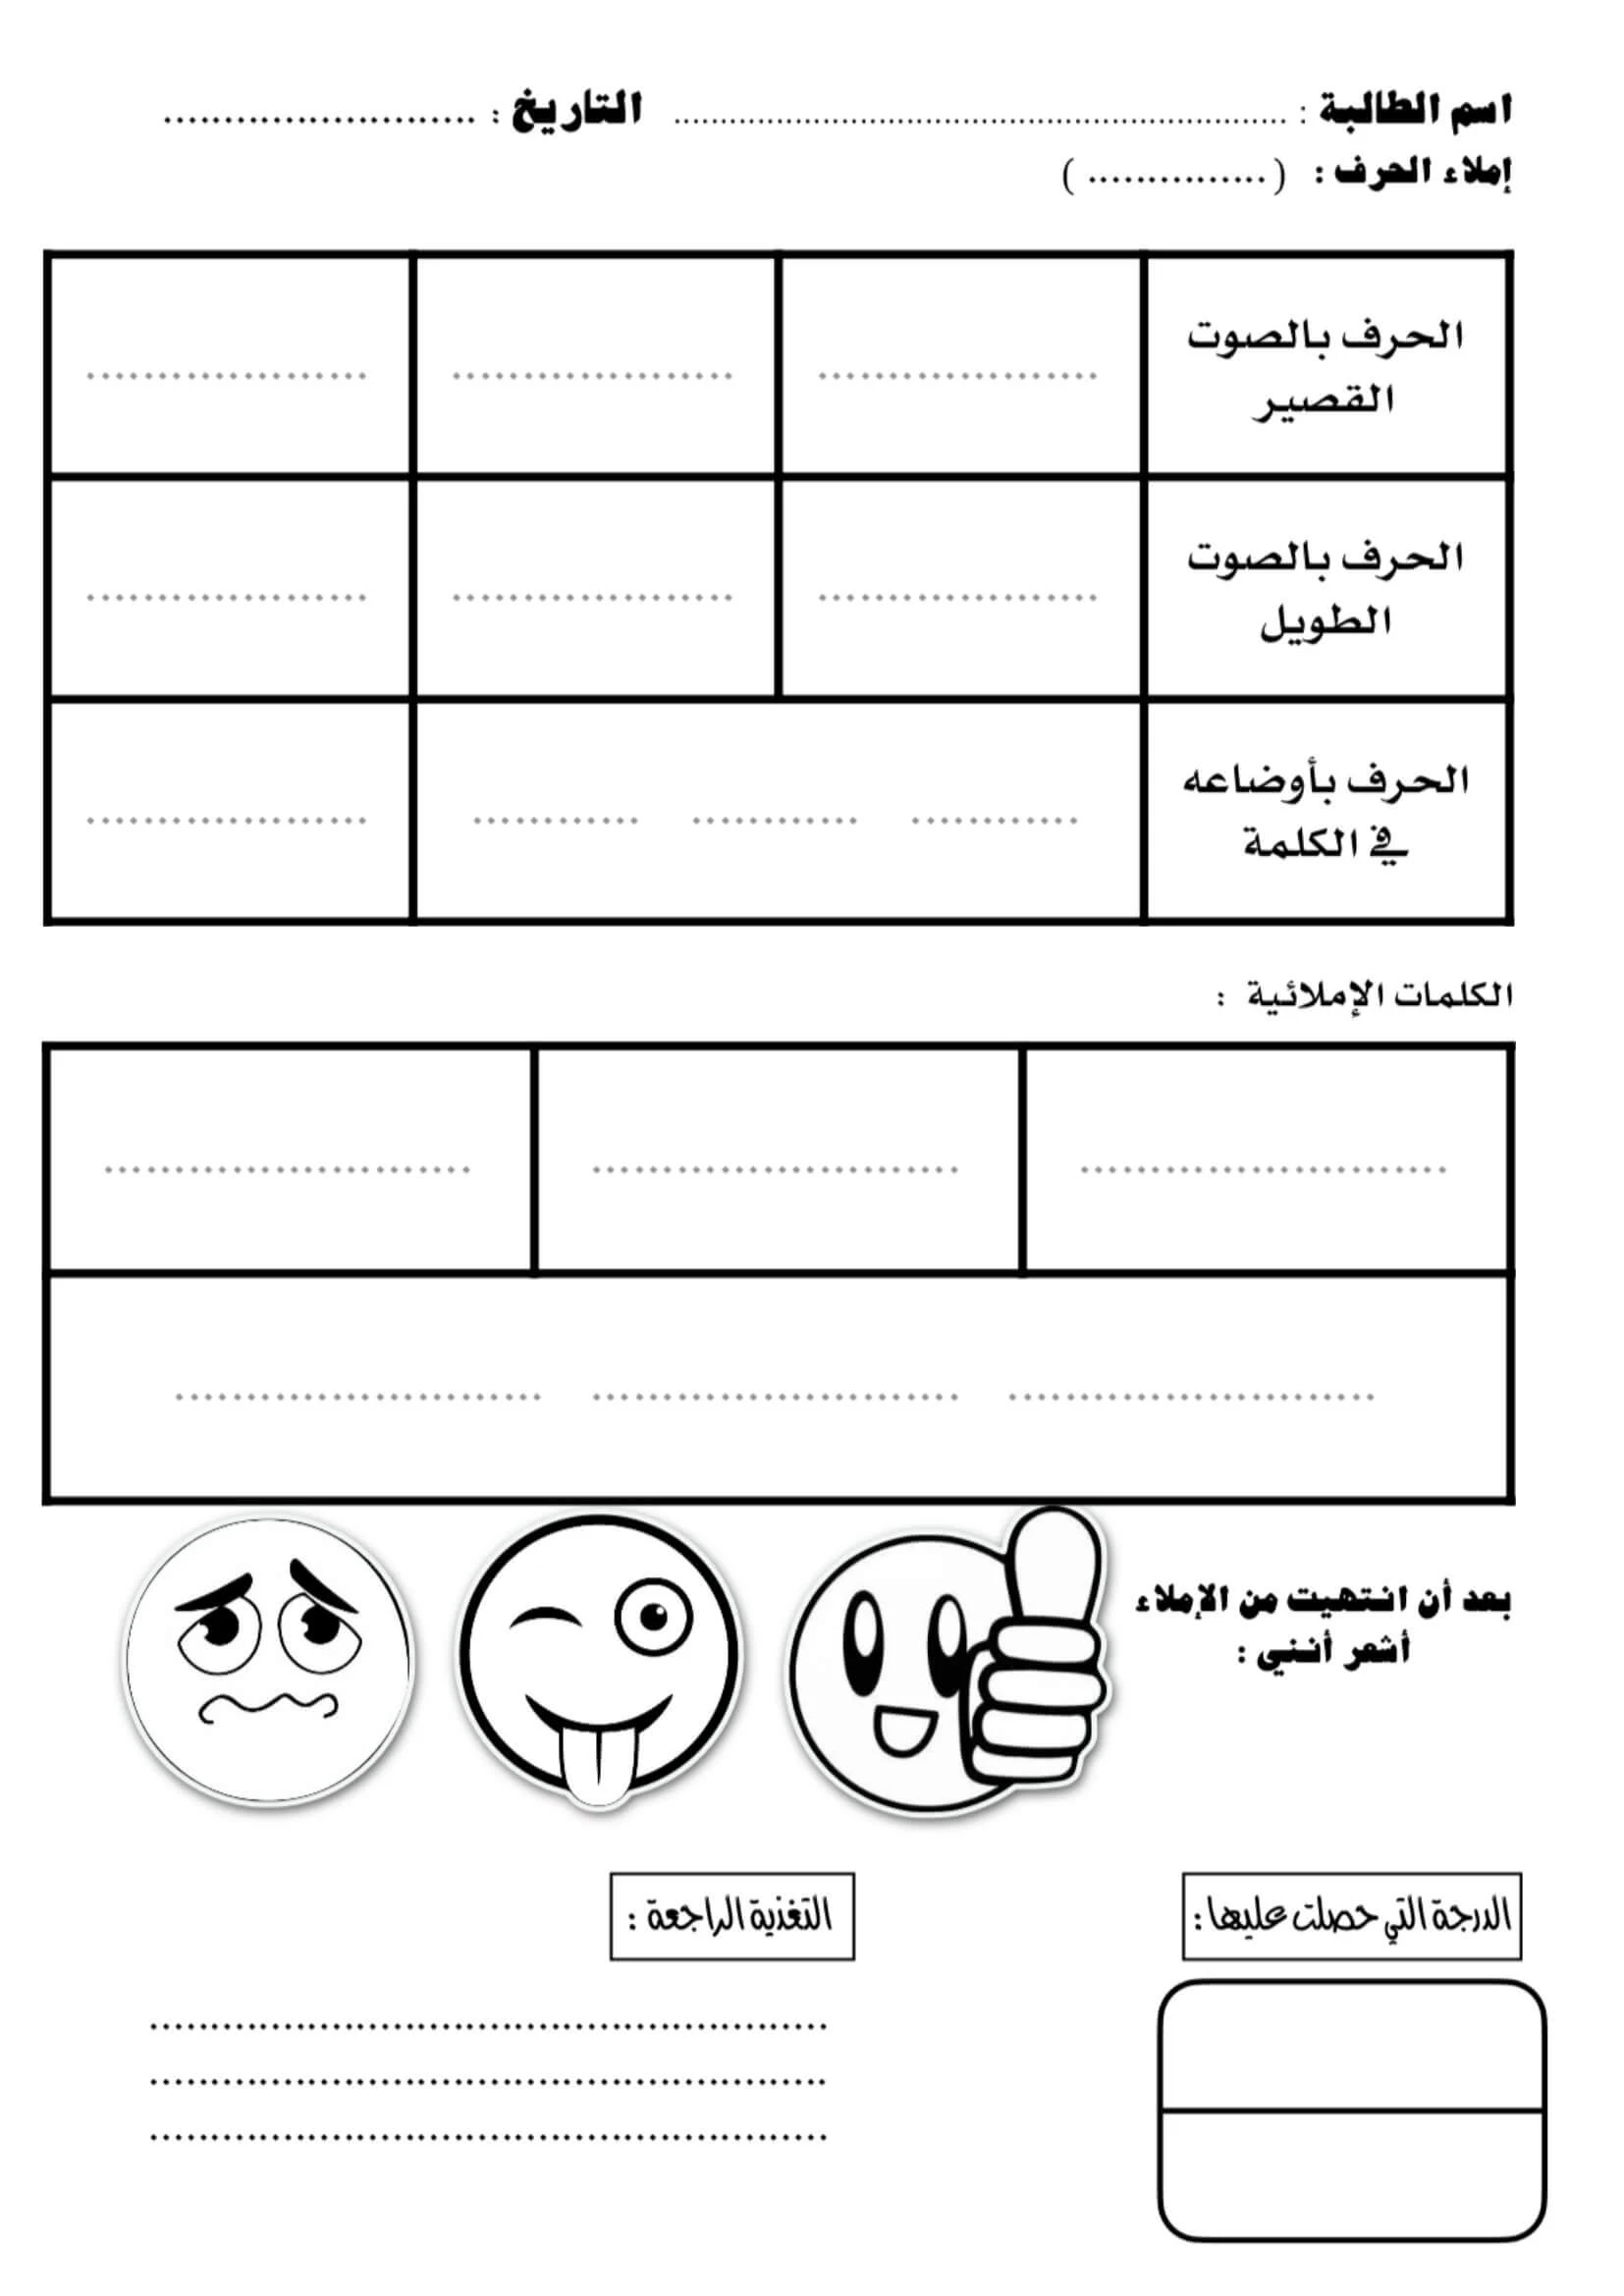 دفتر الاملاء اليومي جميل لطلاب الصف الاول مادة اللغة العربية PDF